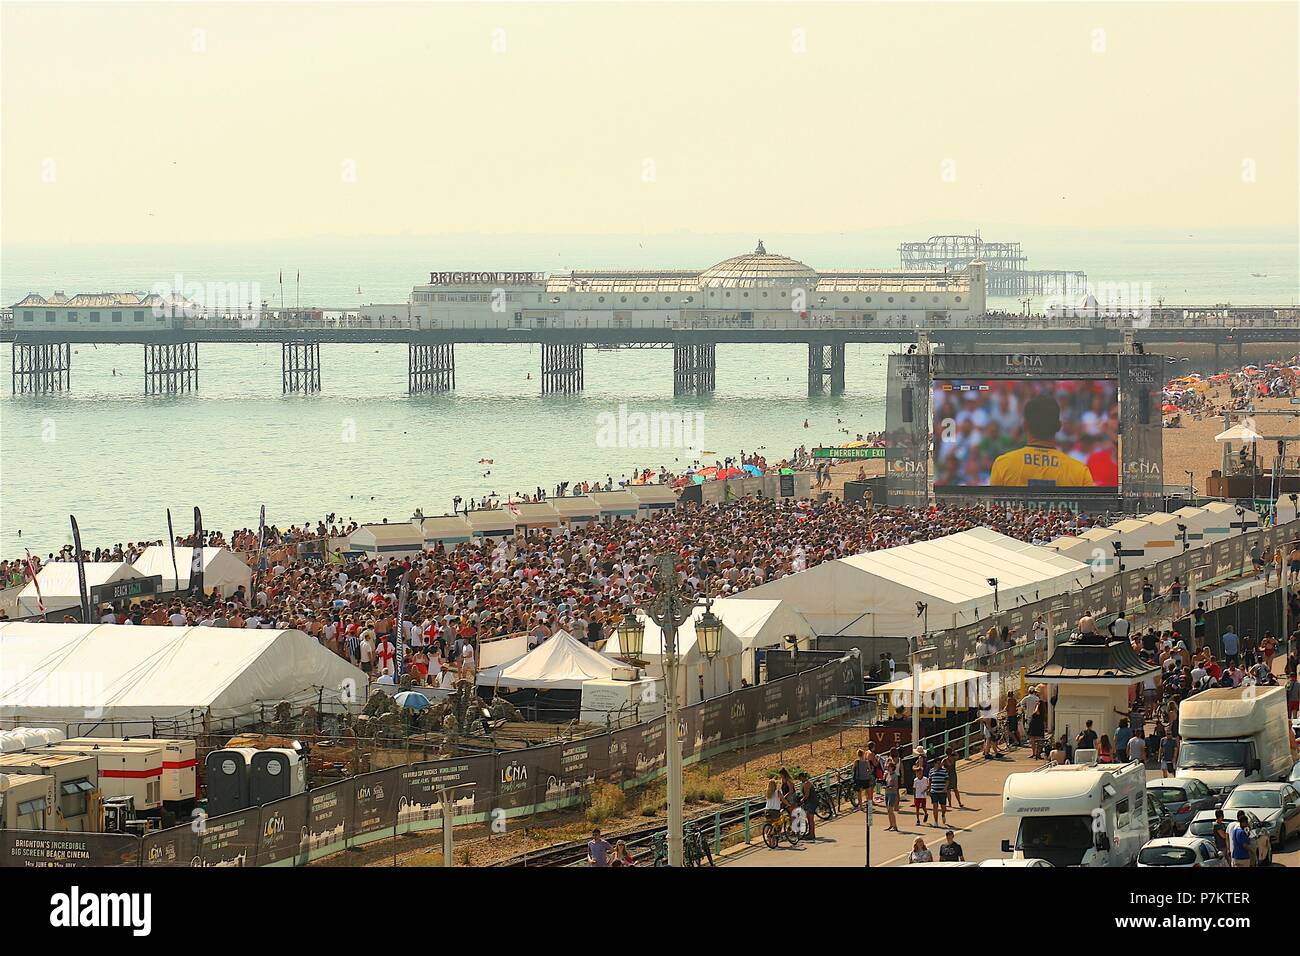 Brighton, UK. 7. Juli 2018. Fußball-Fans auf Brighton Beach beobachten die grossen Schirm am Strand durch die Barrieren der Credit: Rupert Rivett/Alamy leben Nachrichten Stockfoto